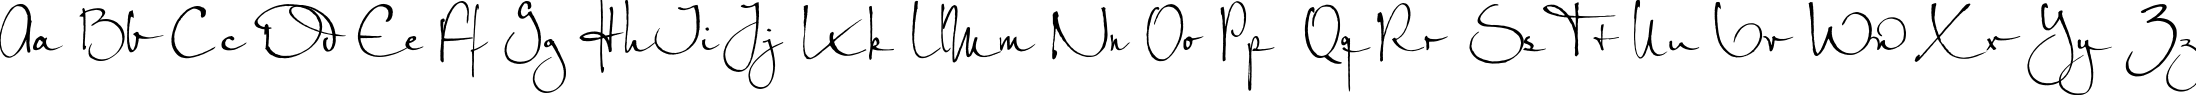 Пример написания английского алфавита шрифтом PetraScriptEF-Alternate